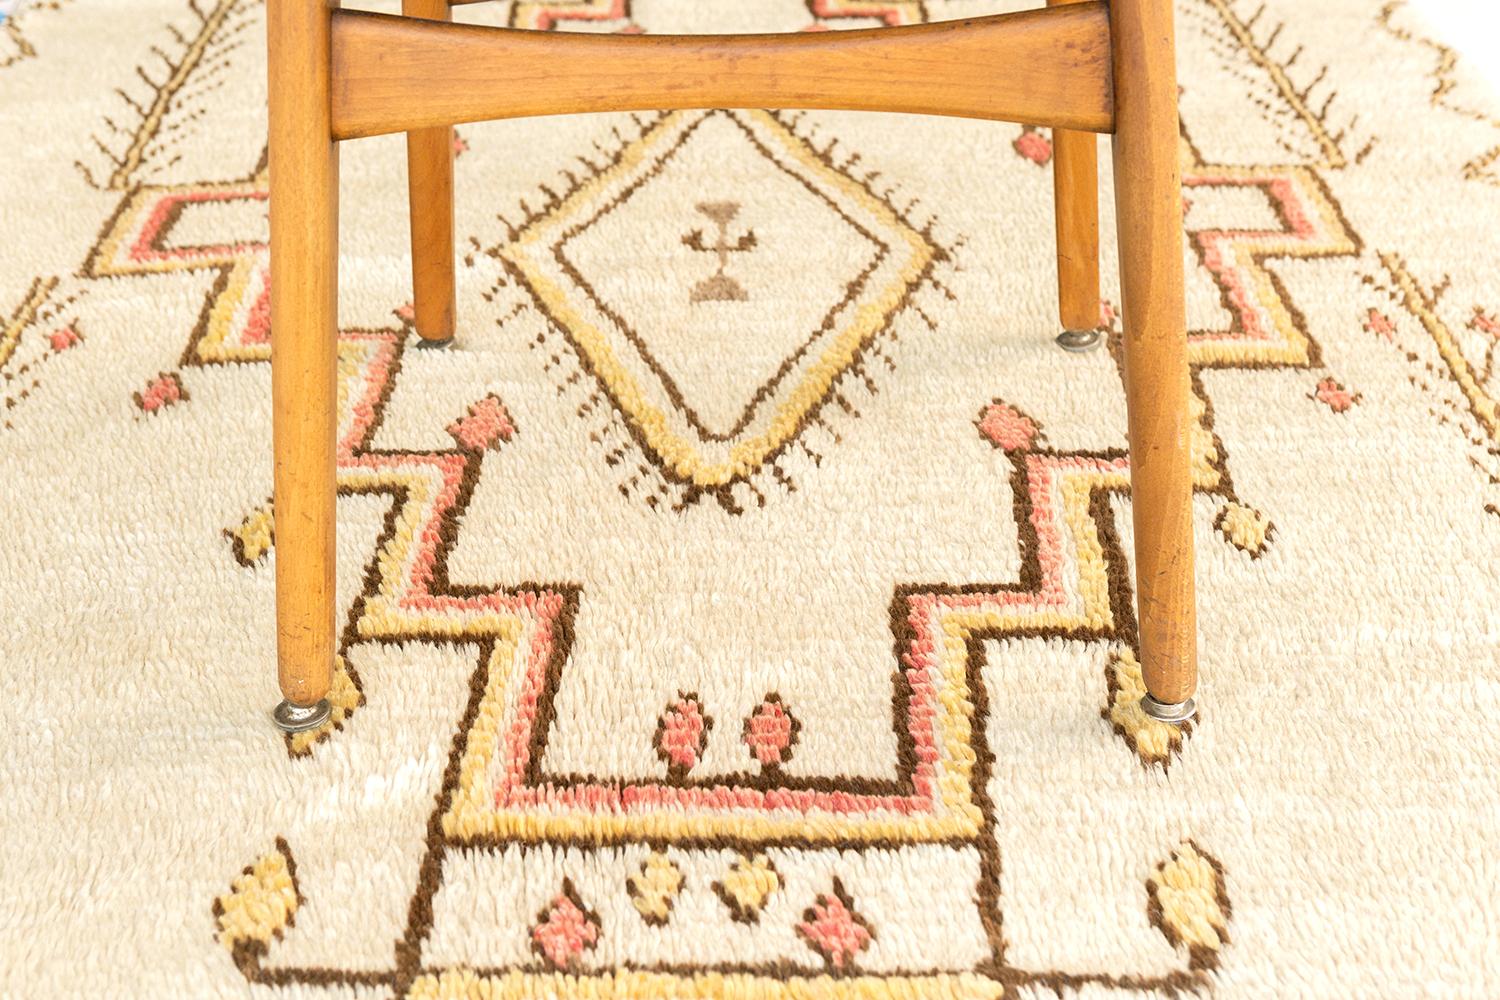 Dieser marokkanische Azilal-Stammteppich im Vintage-Stil strahlt Anmut und Raffinesse aus und zeigt ein symbolisches Muster in den subtilen Tönen von französischem Rosa, Creme, Hellbraun und Elfenbein. Das Stammesmuster, das sich aus verschiedenen